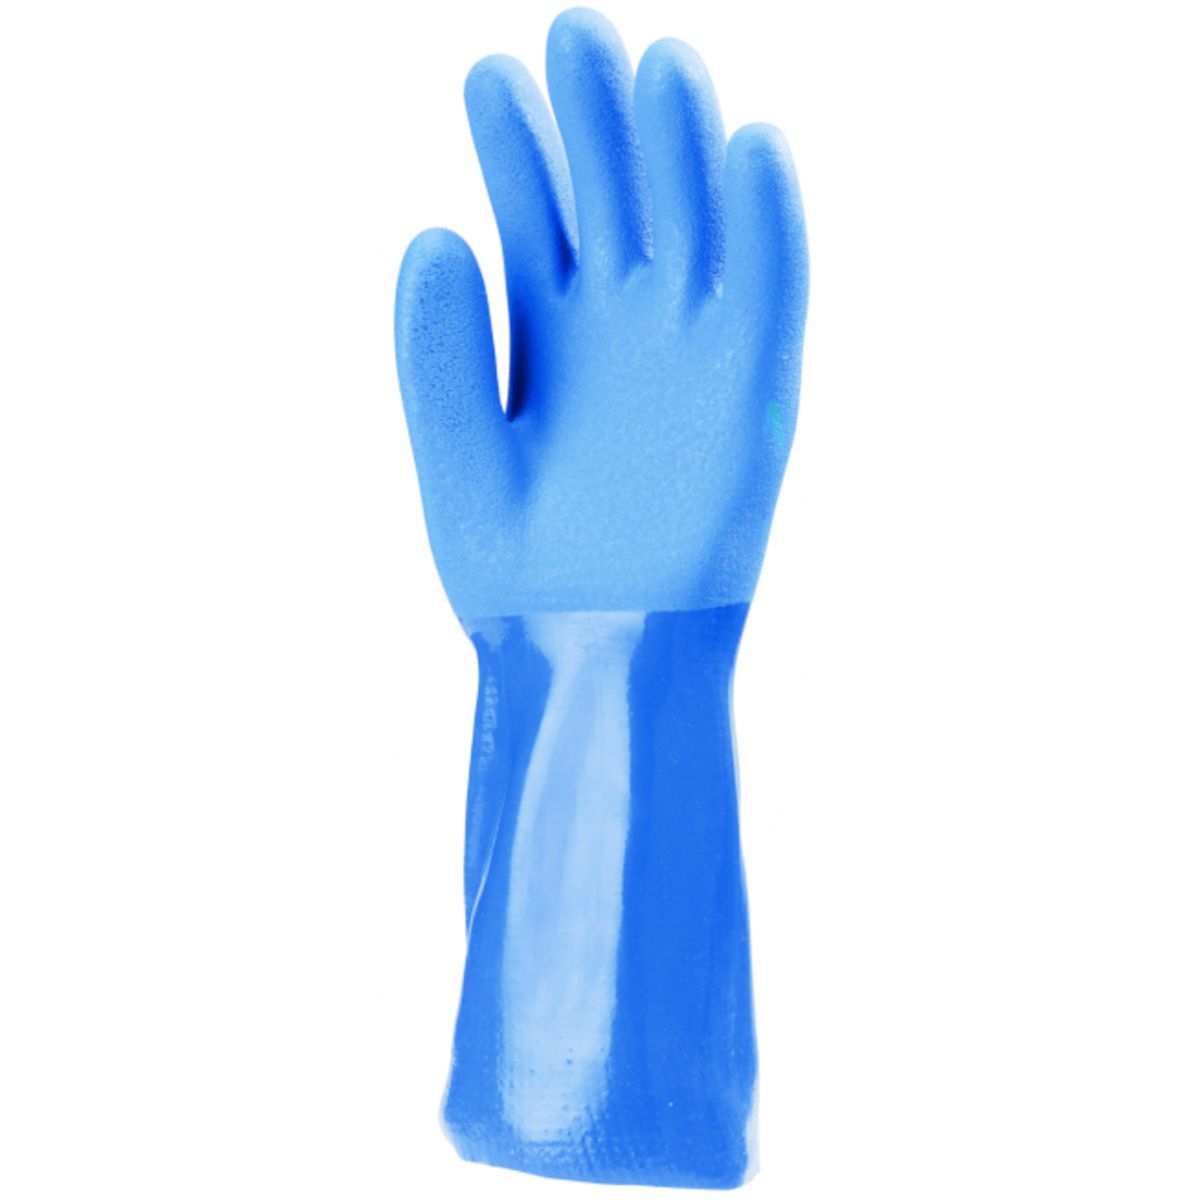 Lot de 10 paires de gants PVC bleu 35cm, Actifresh, chimique - COVERGUARD - Taille XL-10 1